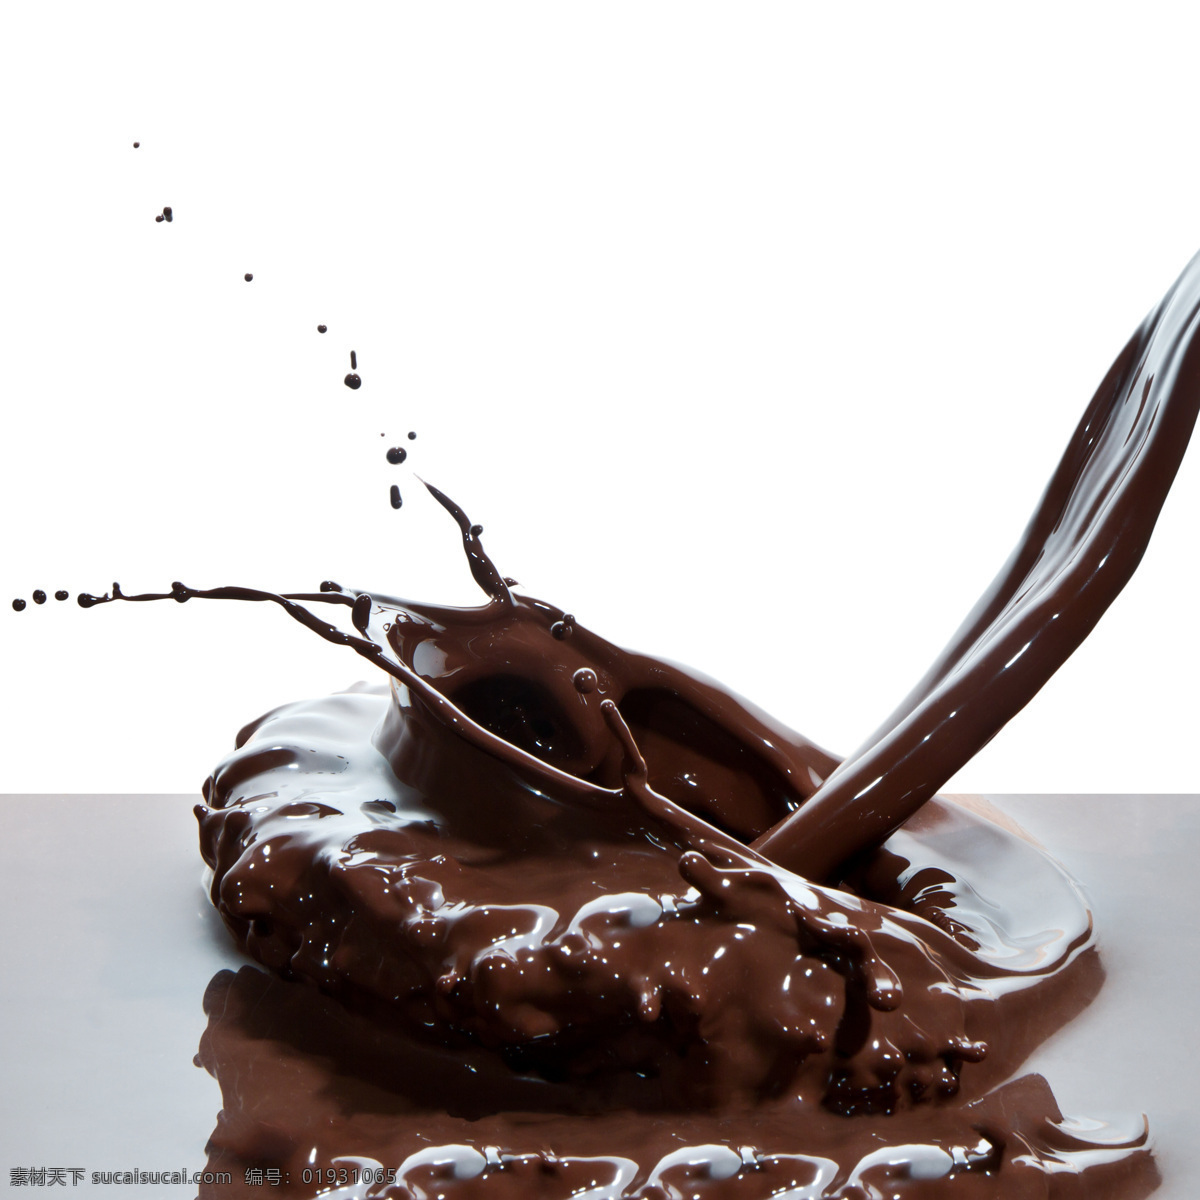 巧克力 喷溅 动感巧克力 巧克力喷溅 飞溅的巧克力 美食图片 餐饮美食